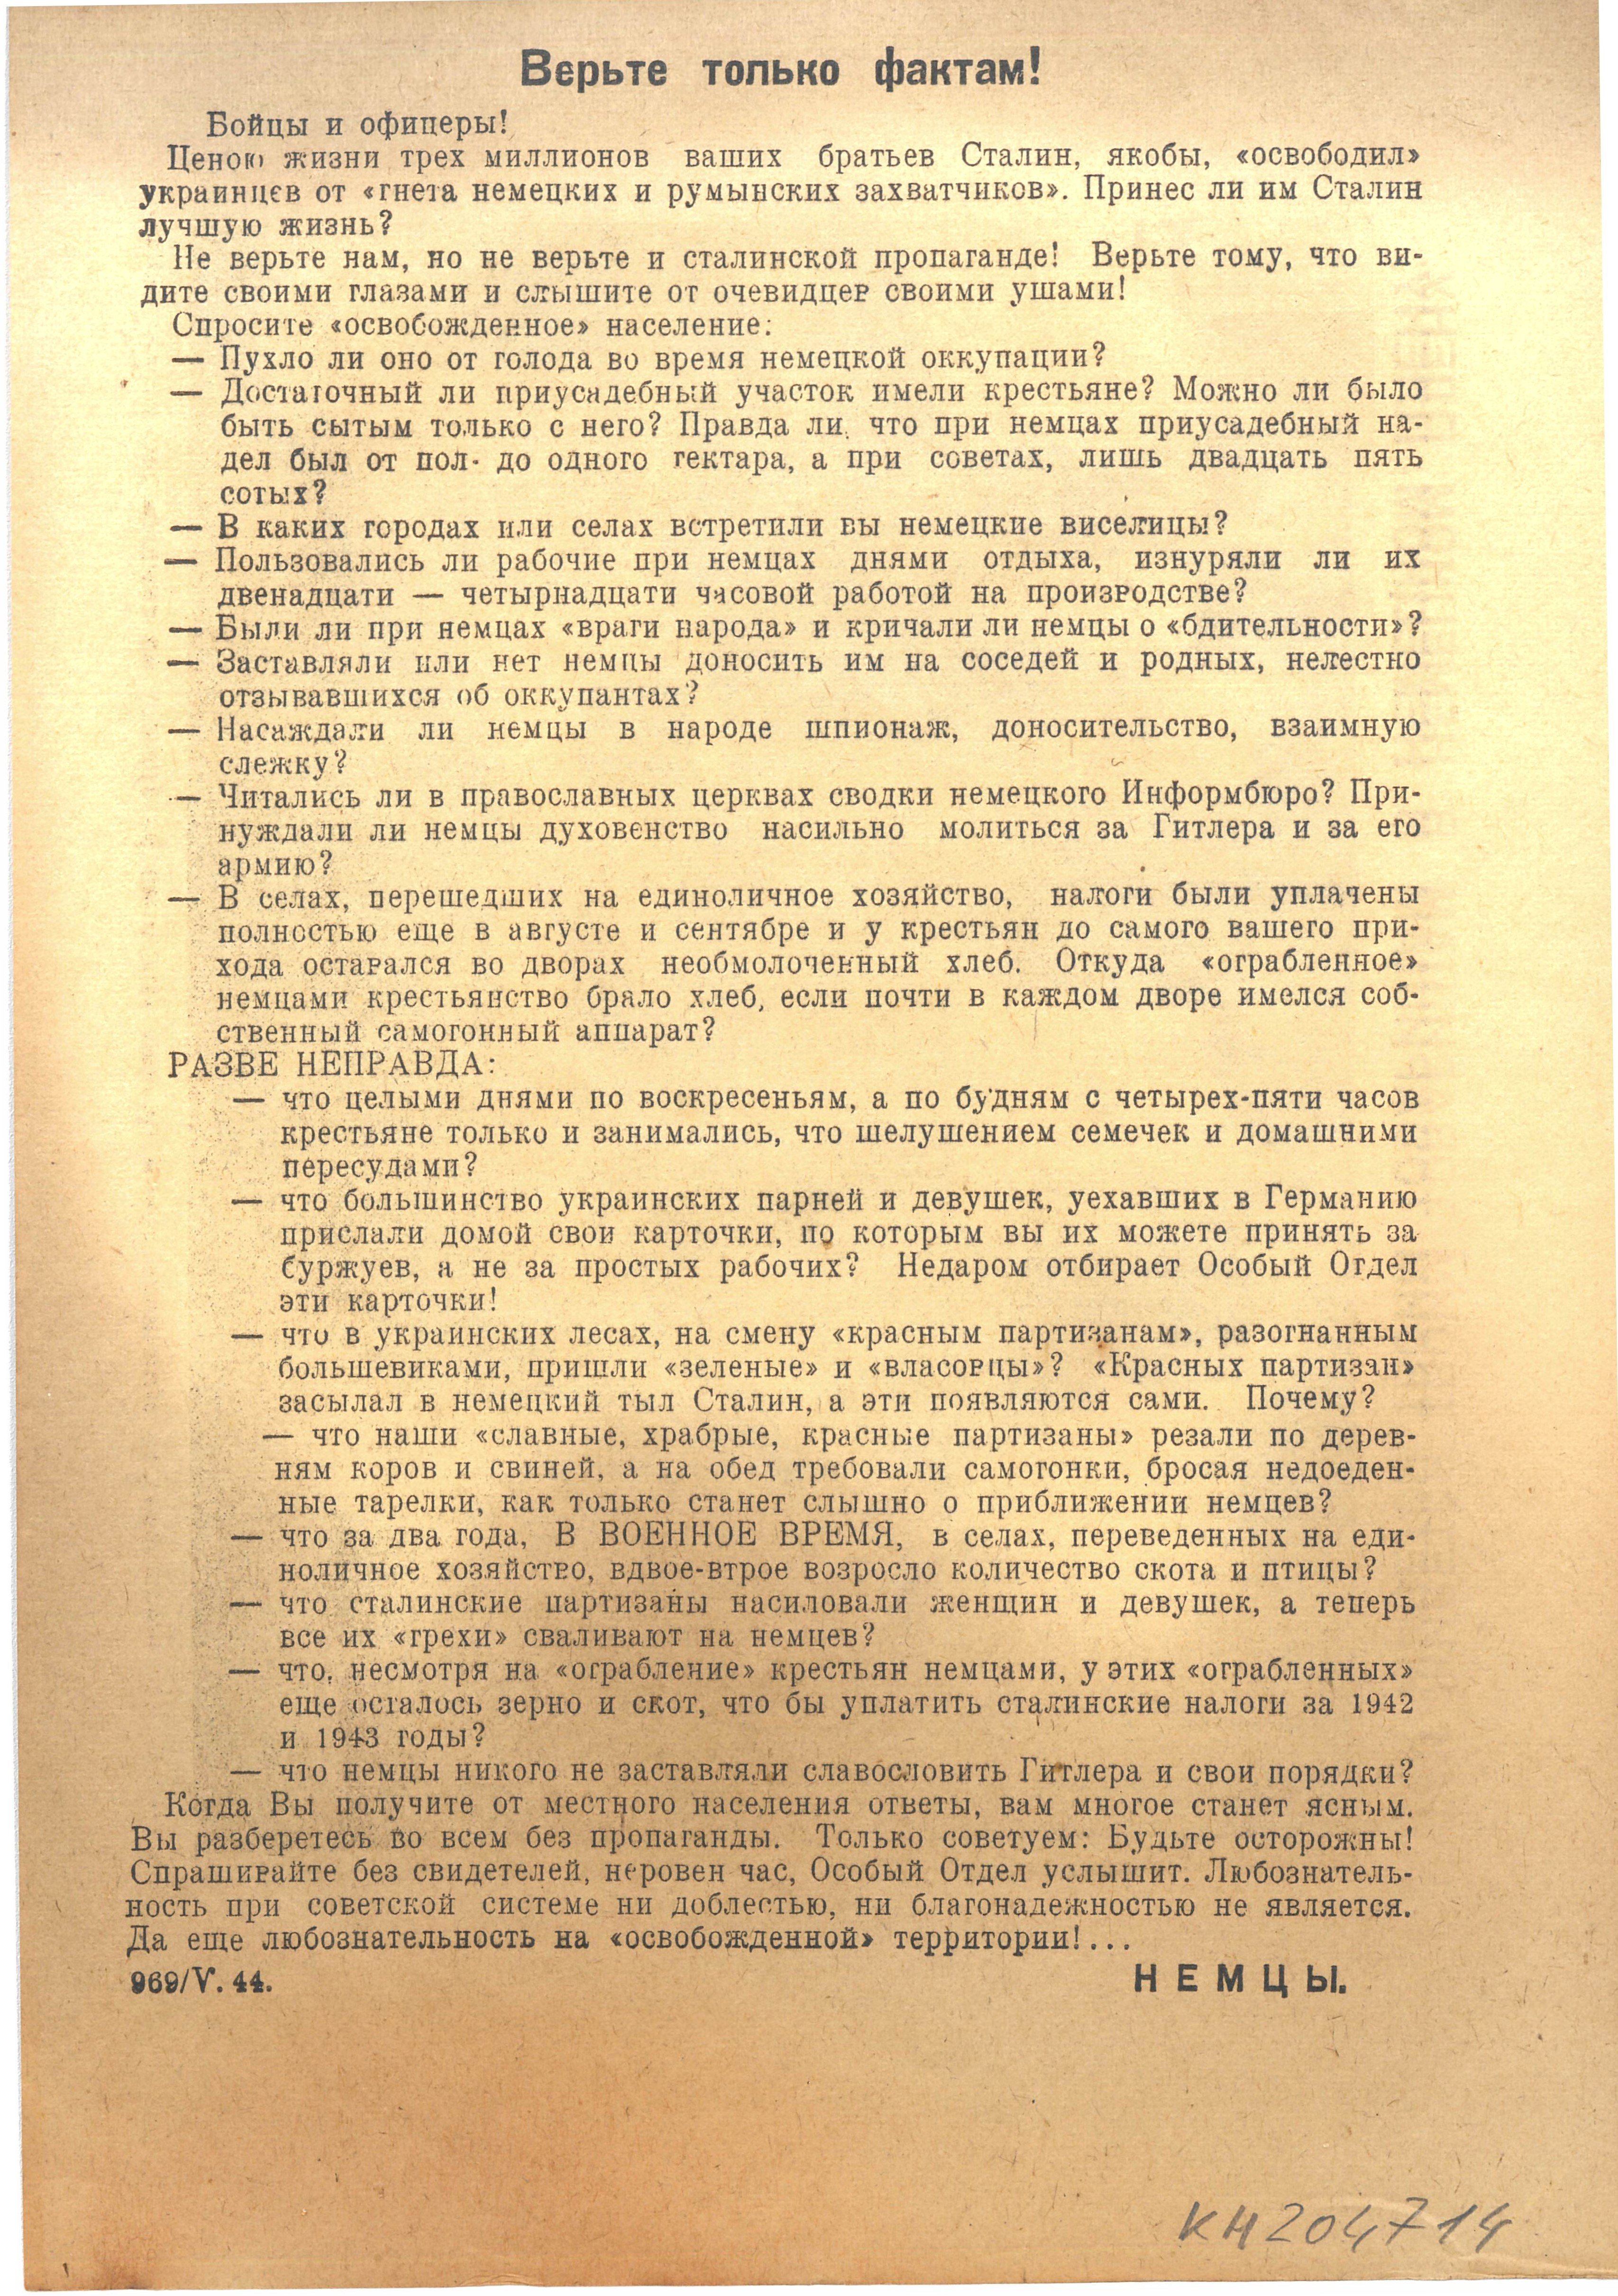 Propagandaflugblatt "Glauben Sie nur den Fakten!", 1944 (Deutsch-Russisches Museum Berlin-Karlshorst CC BY-NC-SA)